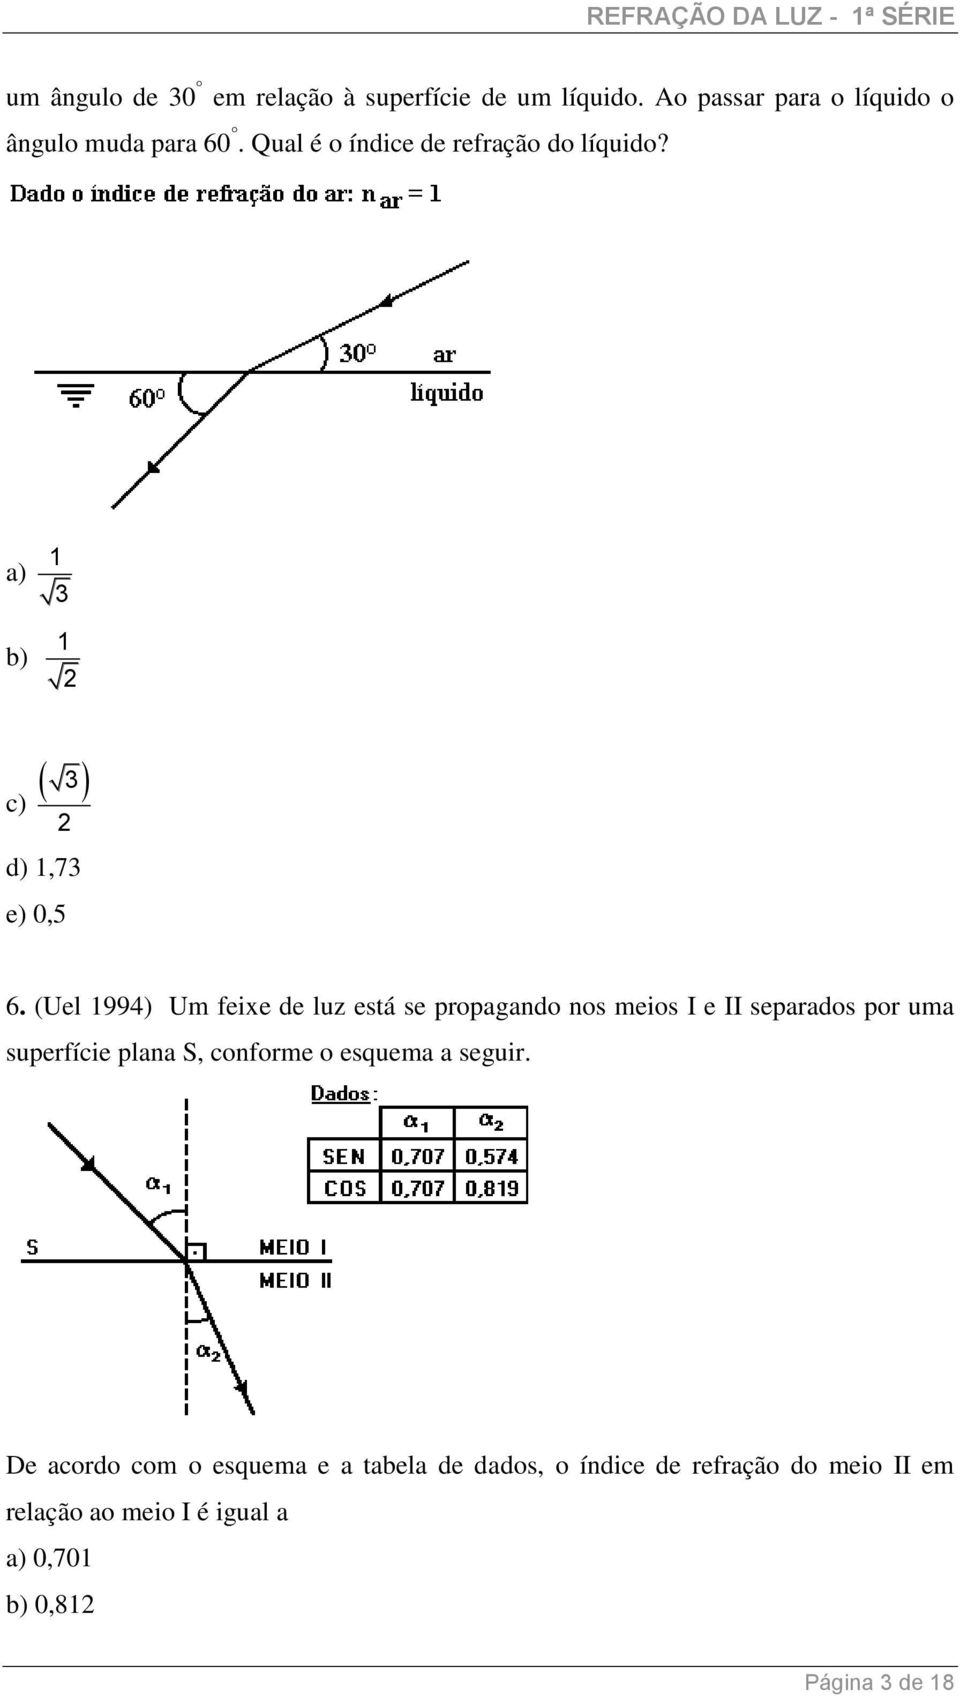 (Uel 1994) Um feixe de luz está se propagando nos meios I e II separados por uma superfície plana S, conforme o